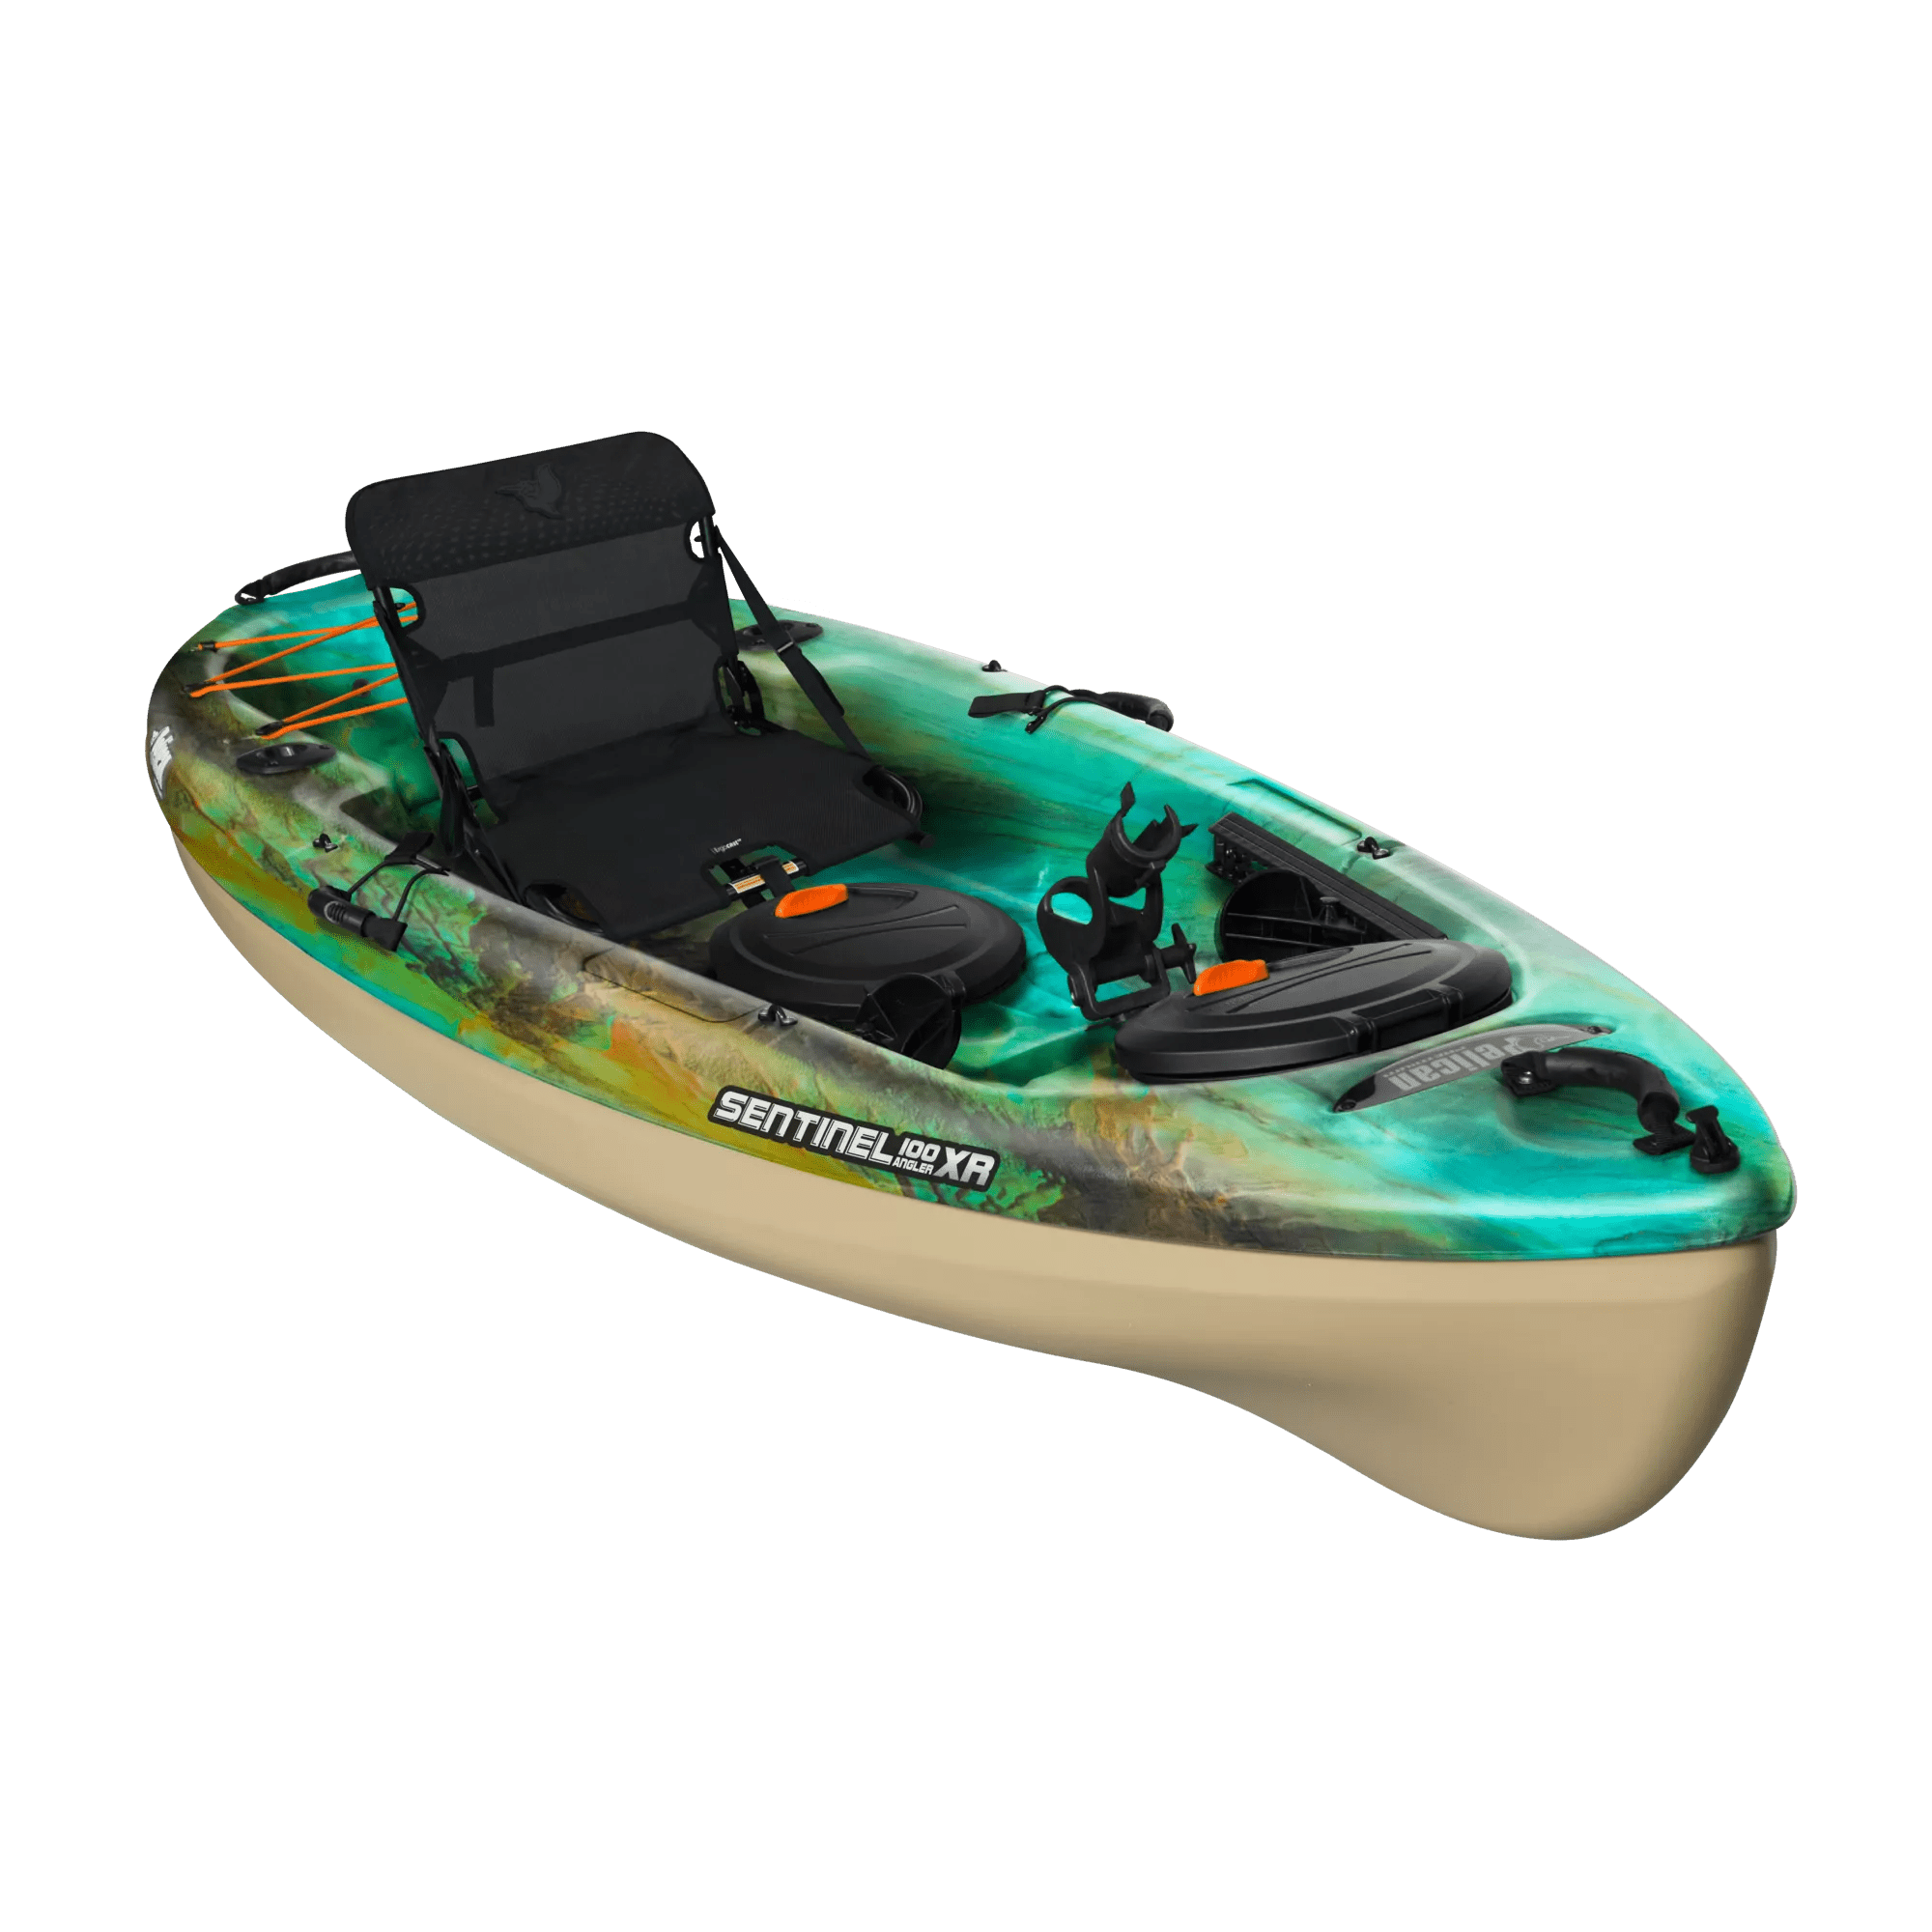 PELICAN - Sentinel 100XR Angler Fishing Kayak - Green - KBP10P100 - ISO 